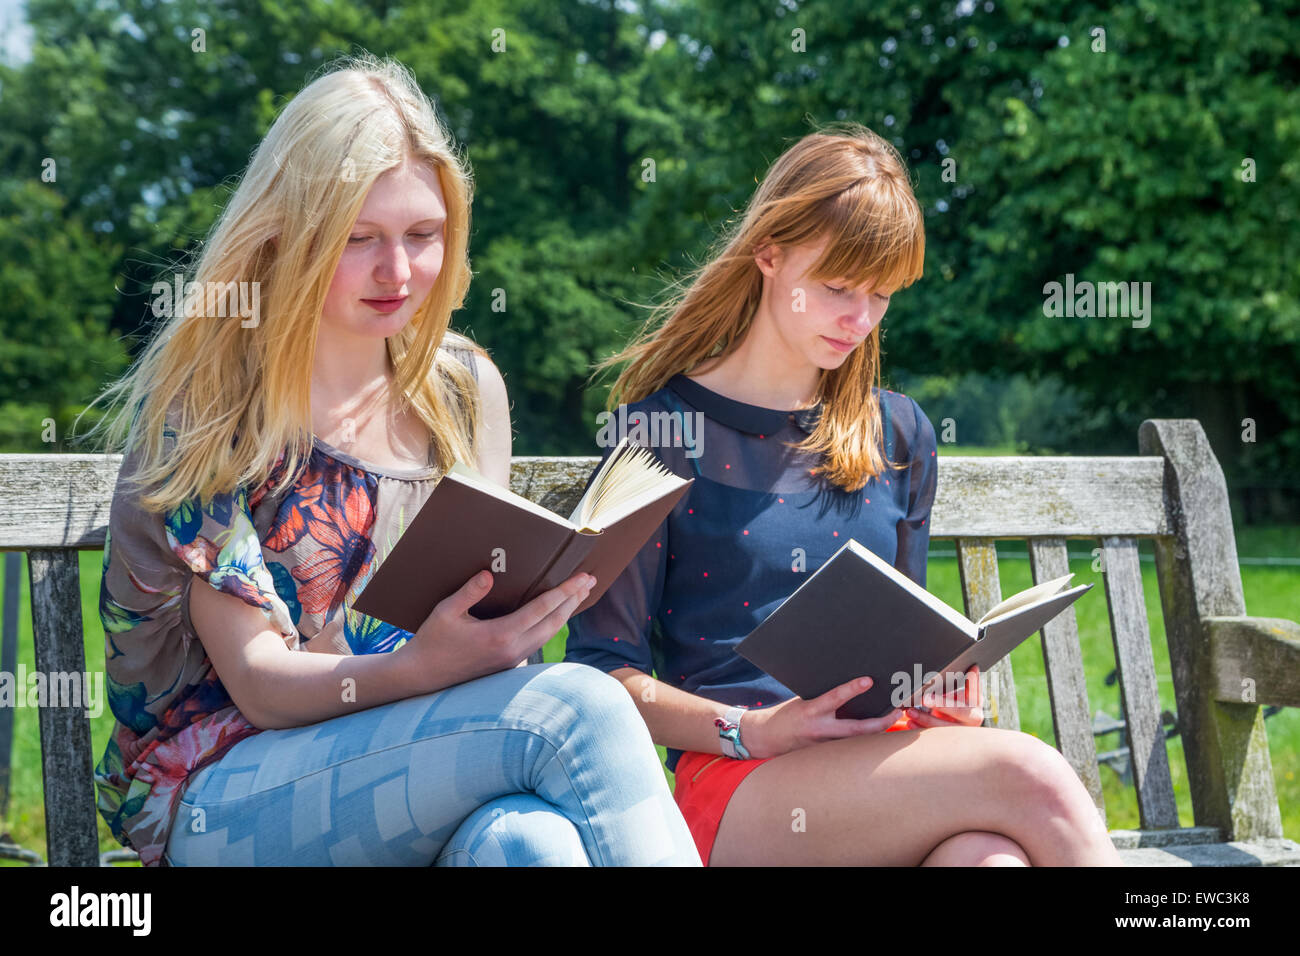 Deux adolescentes de race blanche à lire des livres sur un banc dans la nature verte Banque D'Images